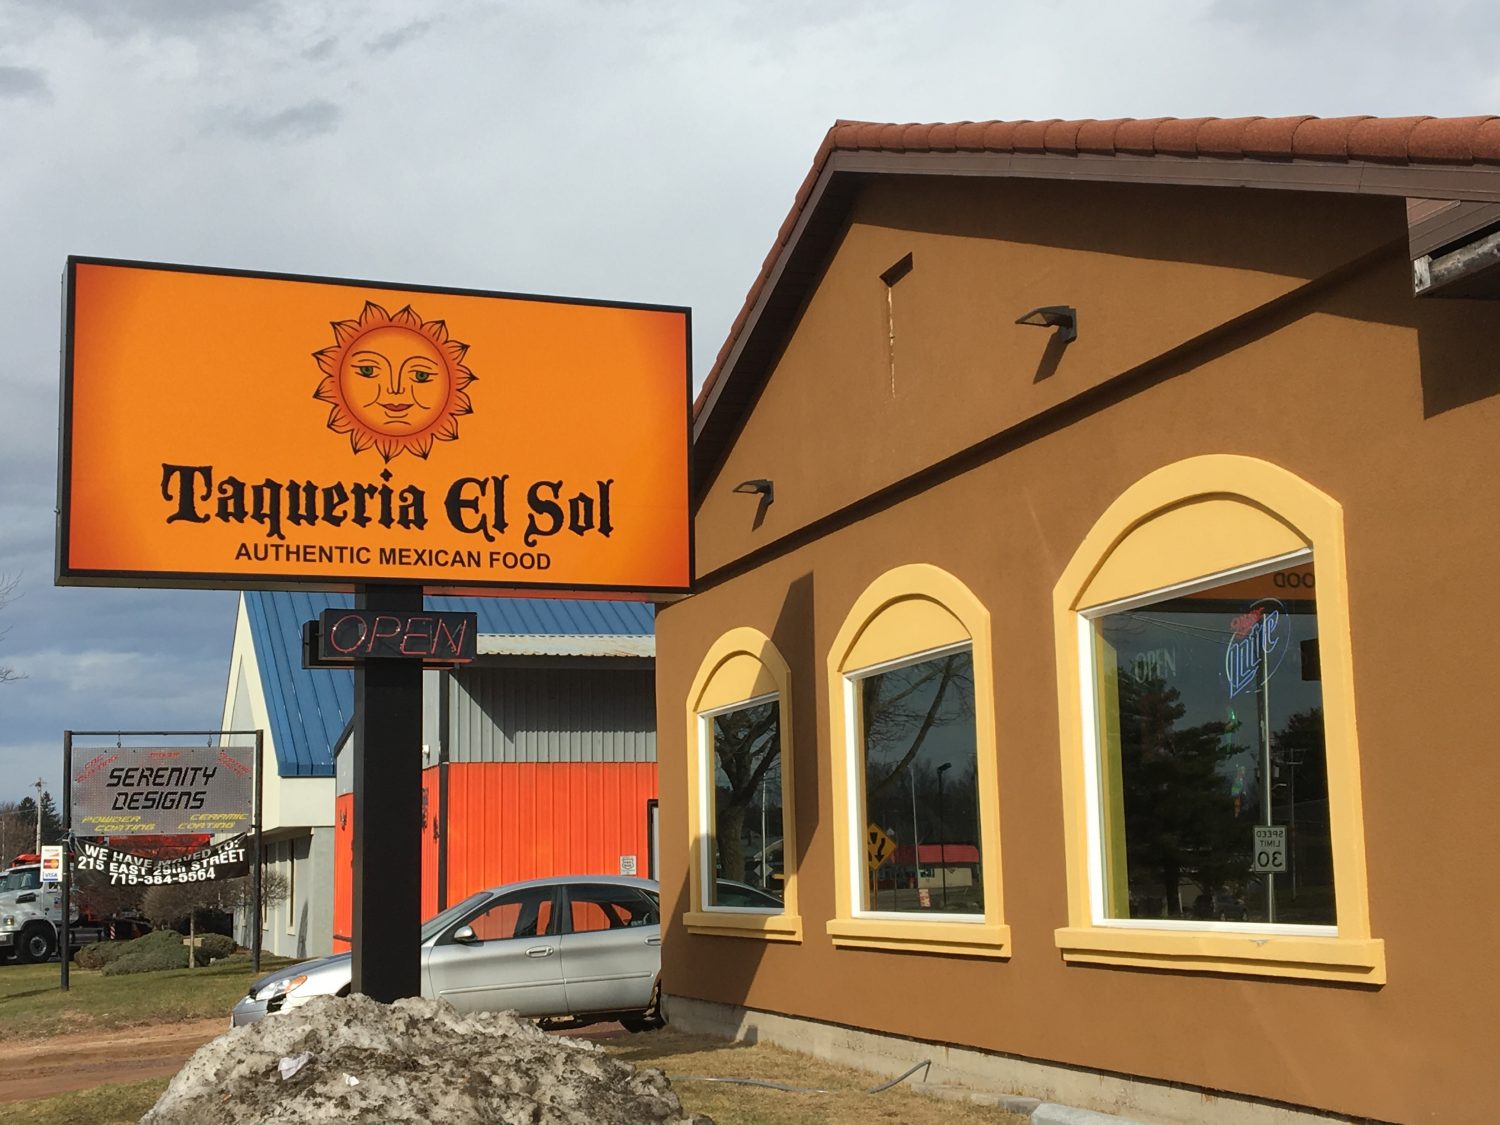 As a part of Taqueria El Sols planned updates, the restaurant introduced a new menu March 1.